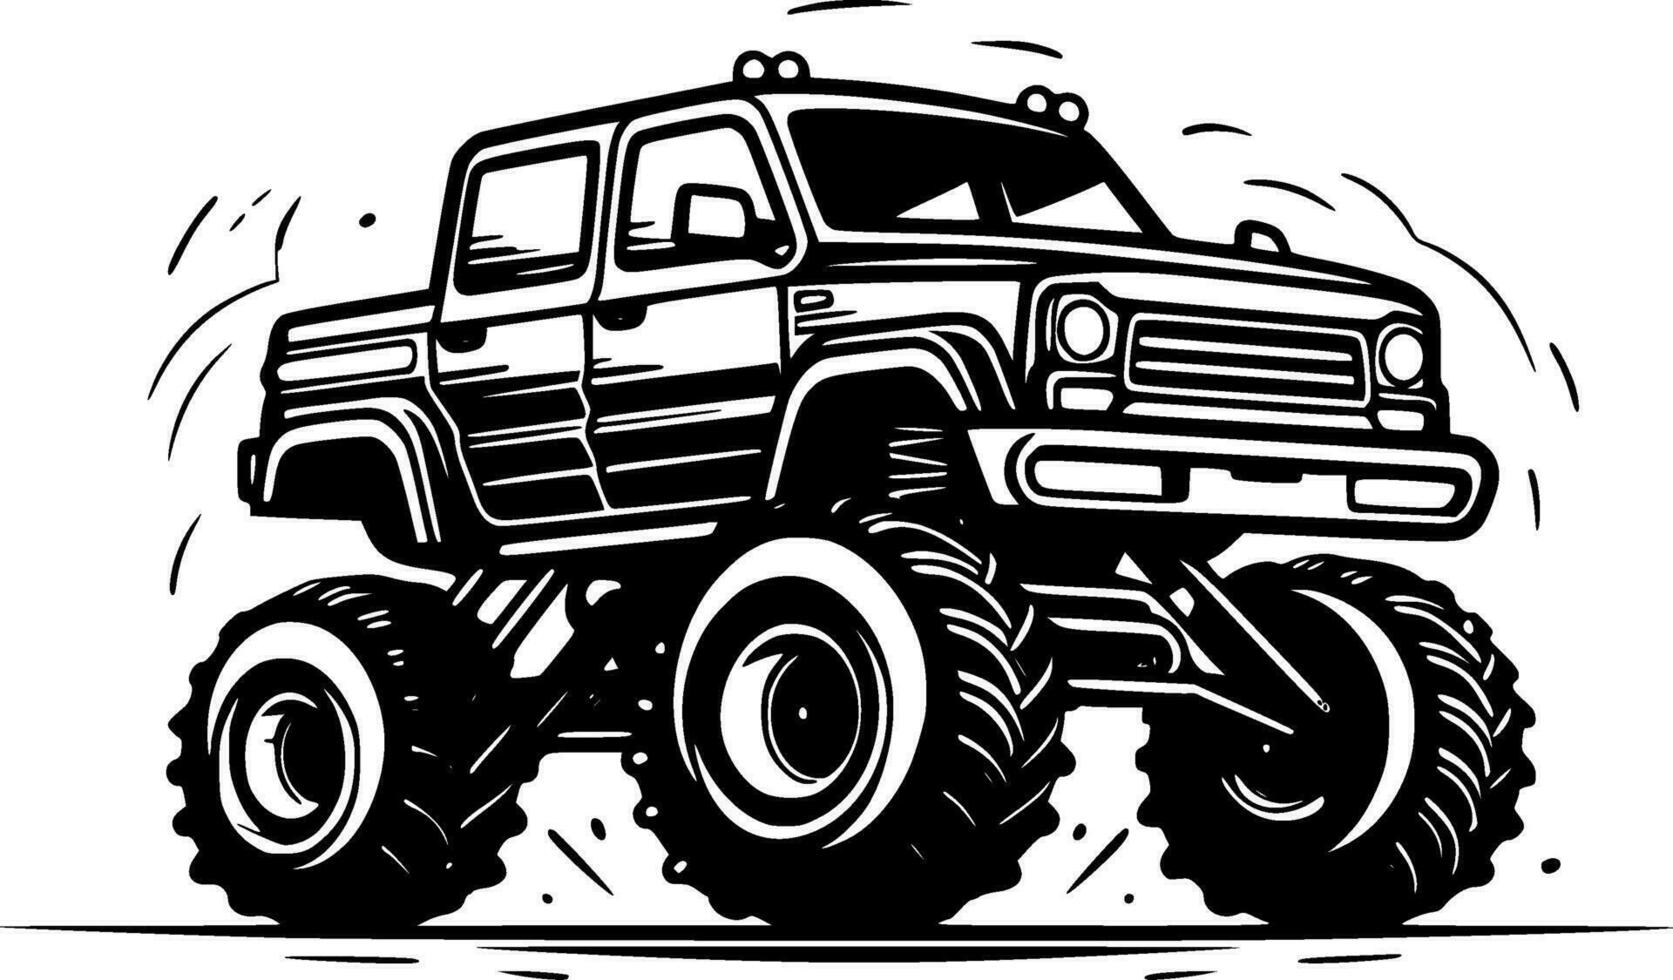 Monster Truck, Black and White Vector illustration